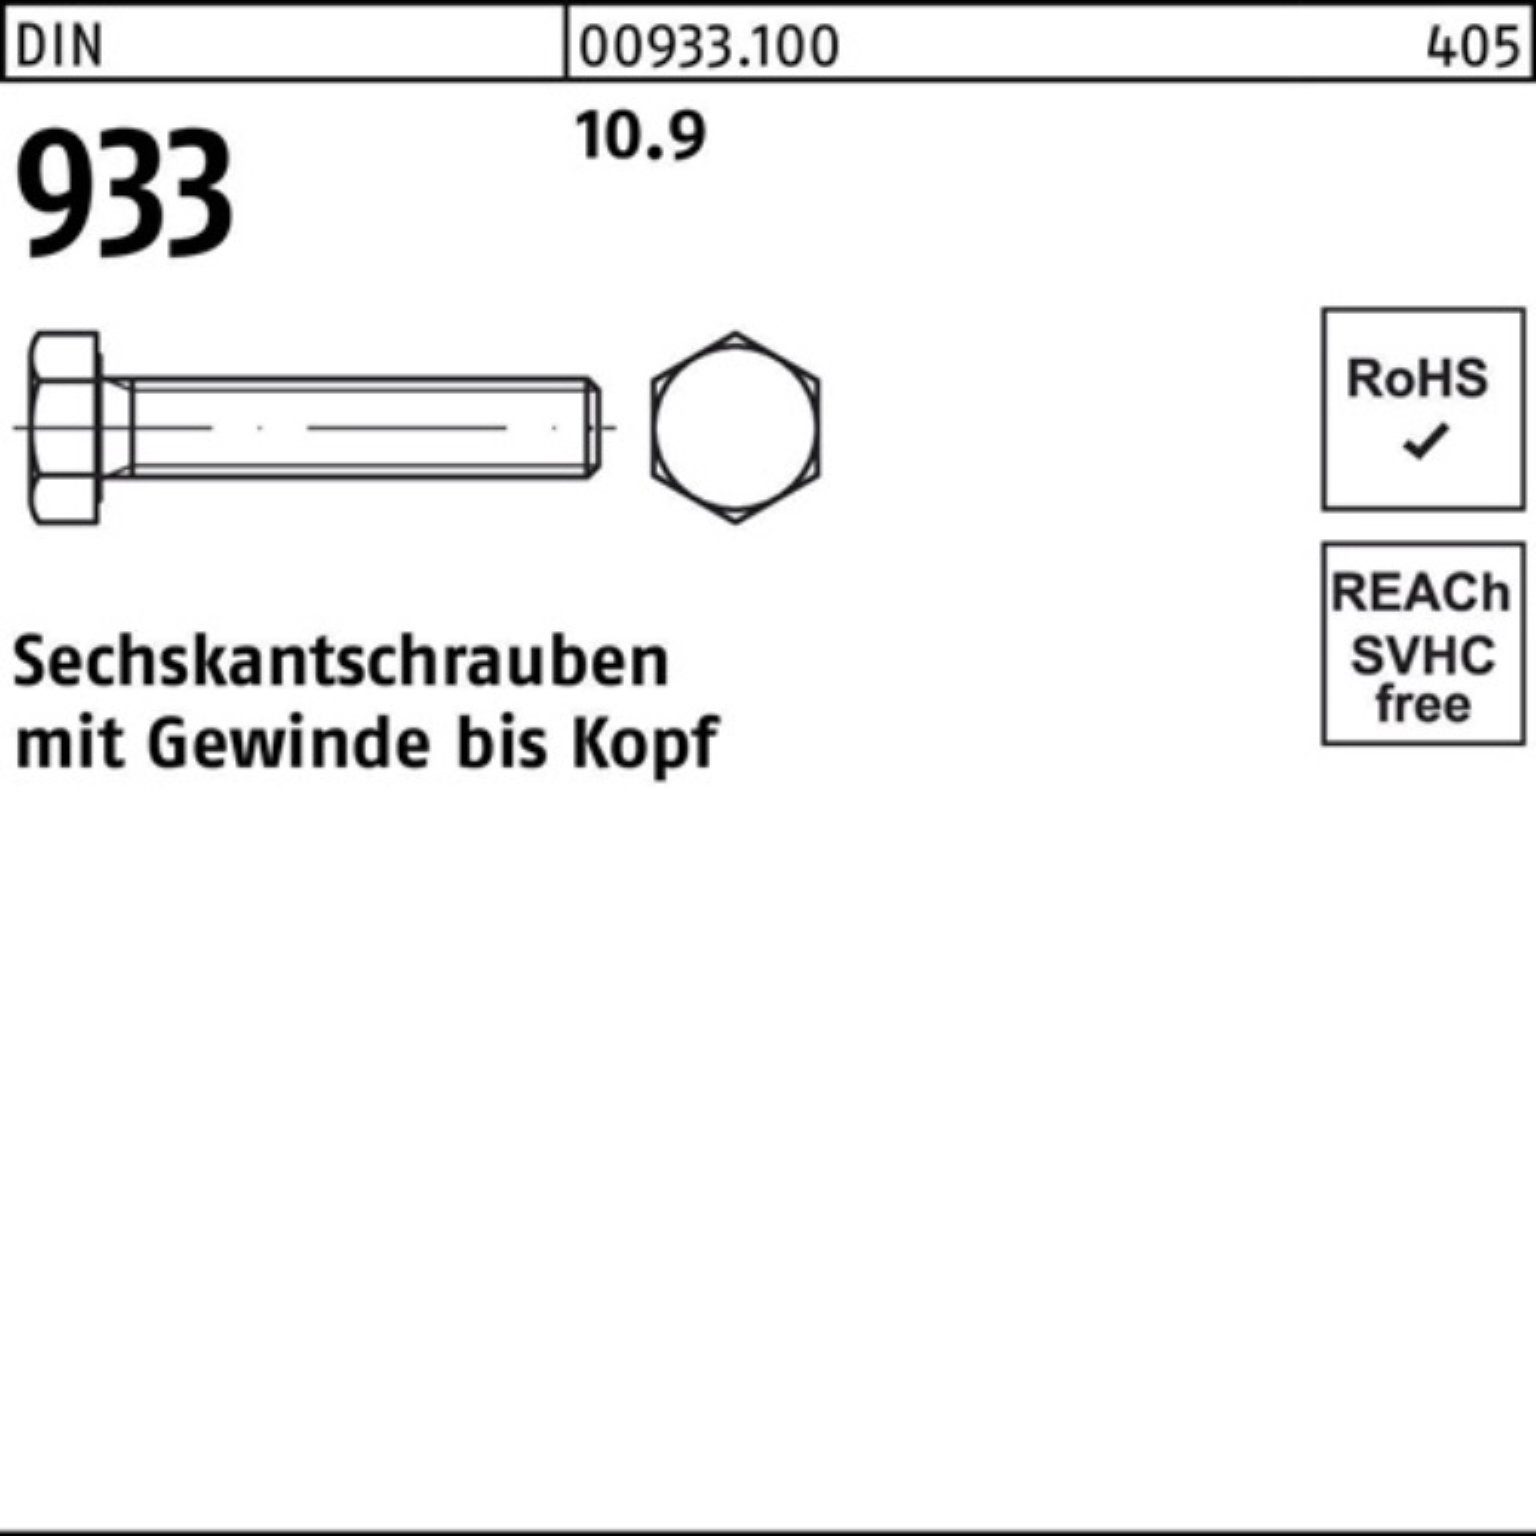 Reyher Sechskantschraube 100 Sechskantschraube 100er 933 M18x Stück 93 Pack DIN VG 25 DIN 10.9